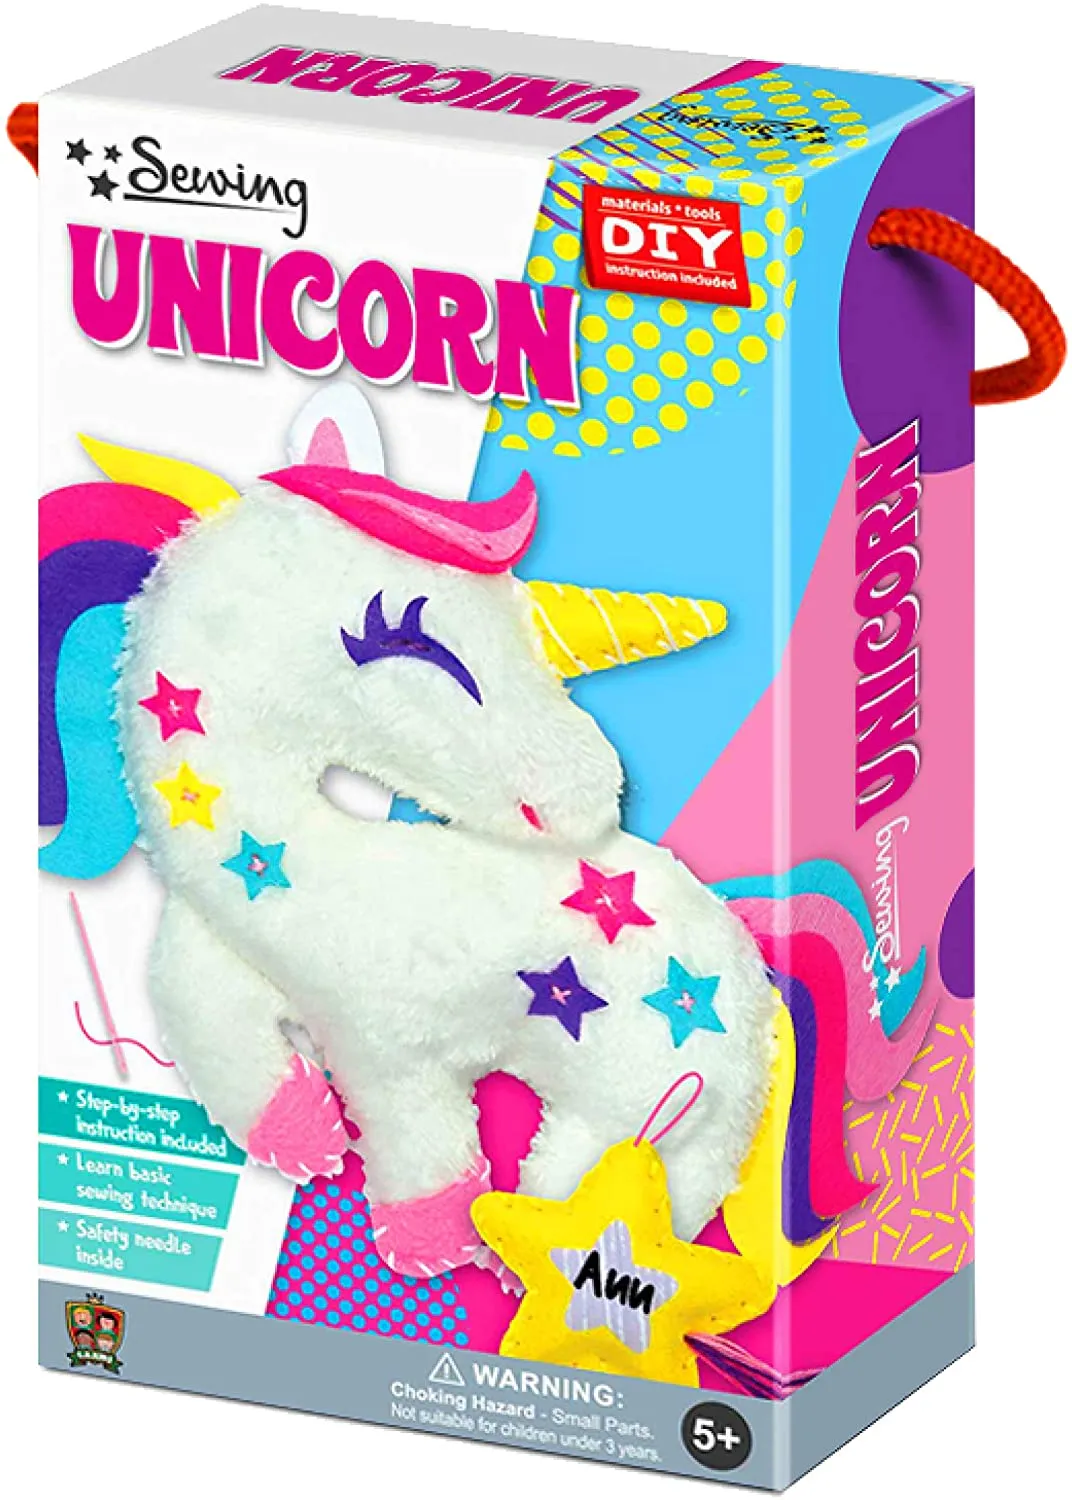 Unicorn sewing kit